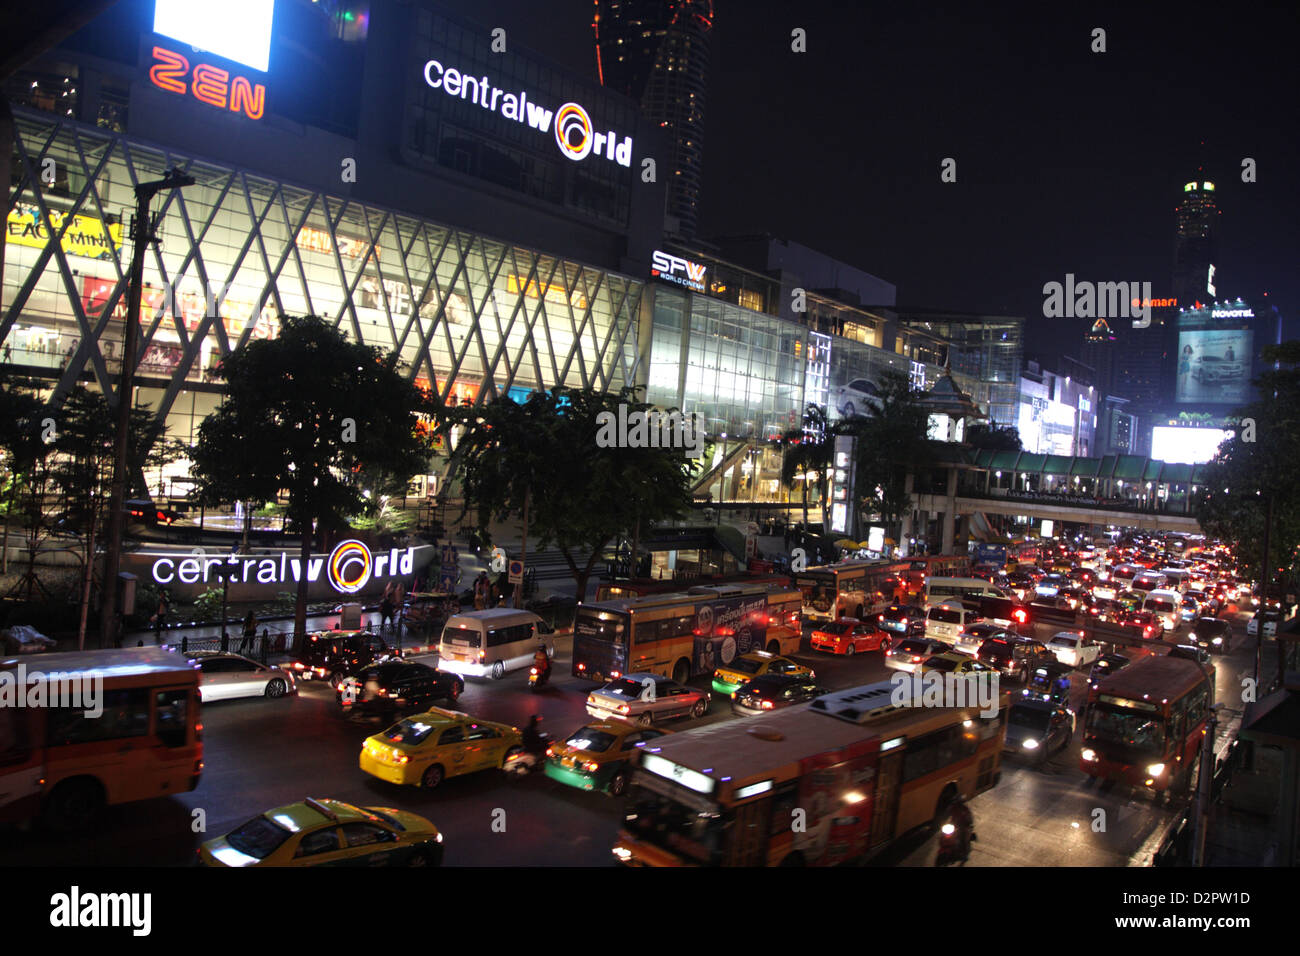 Central World Shopping Center in Bangkok , Thailand Stock Photo